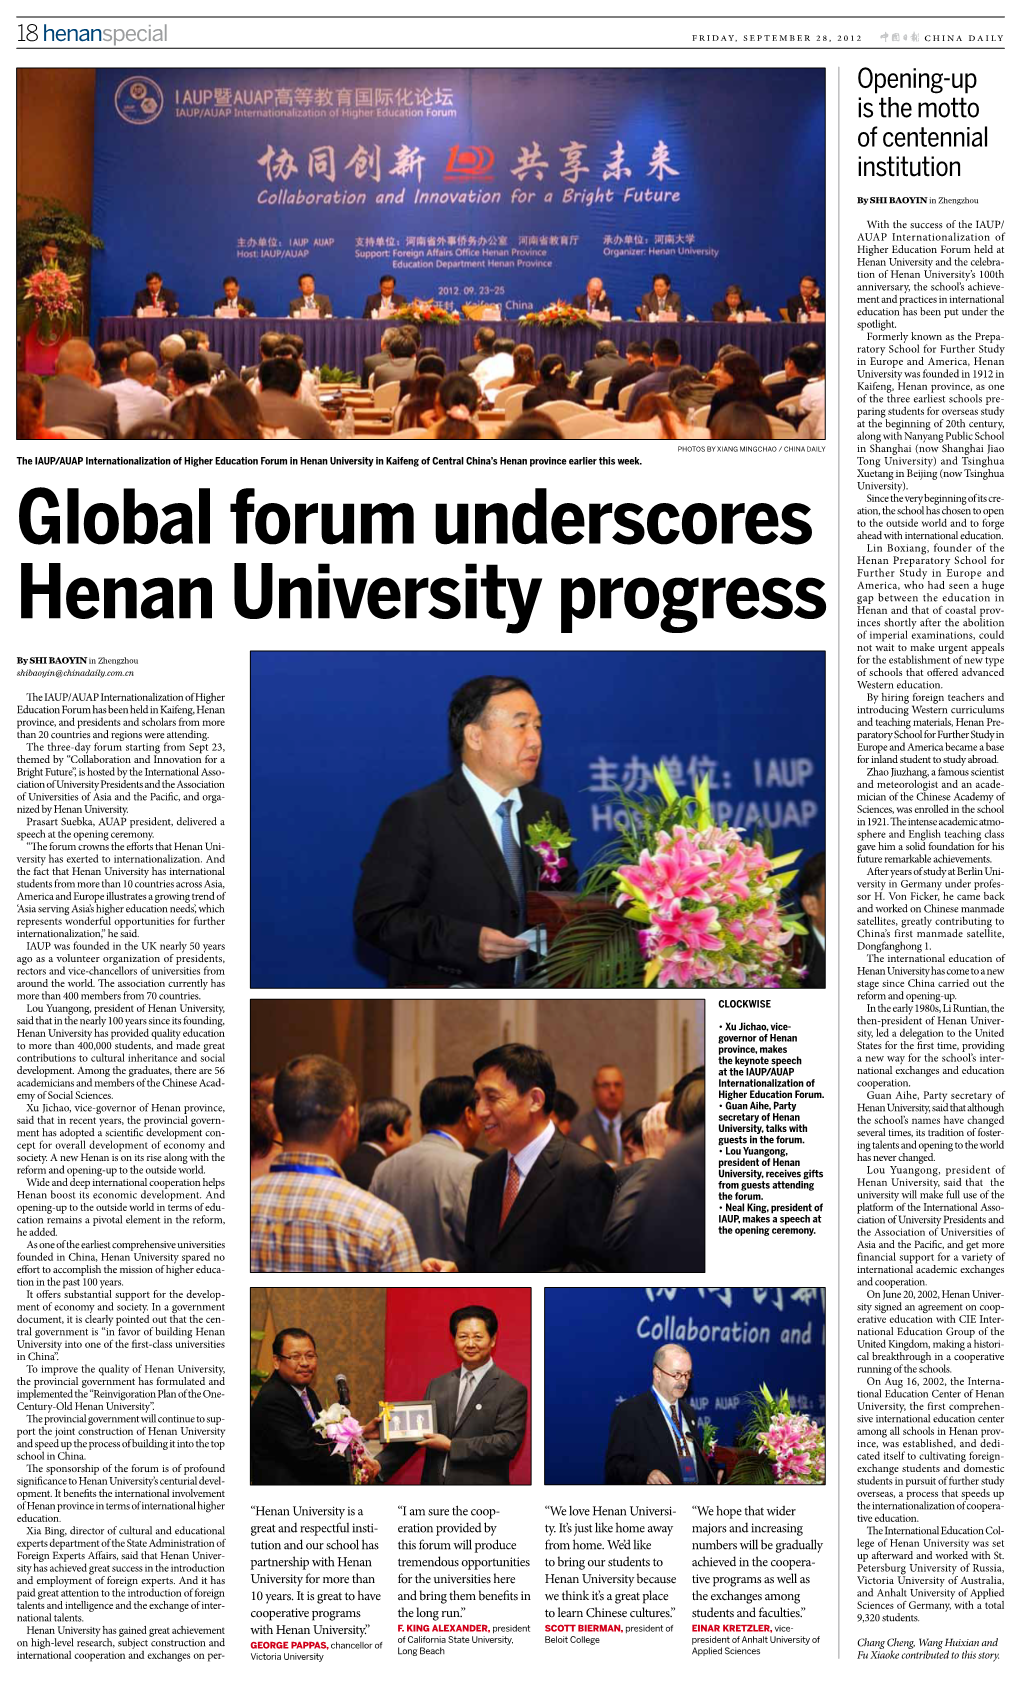 Global Forum Underscores Henan University Progress